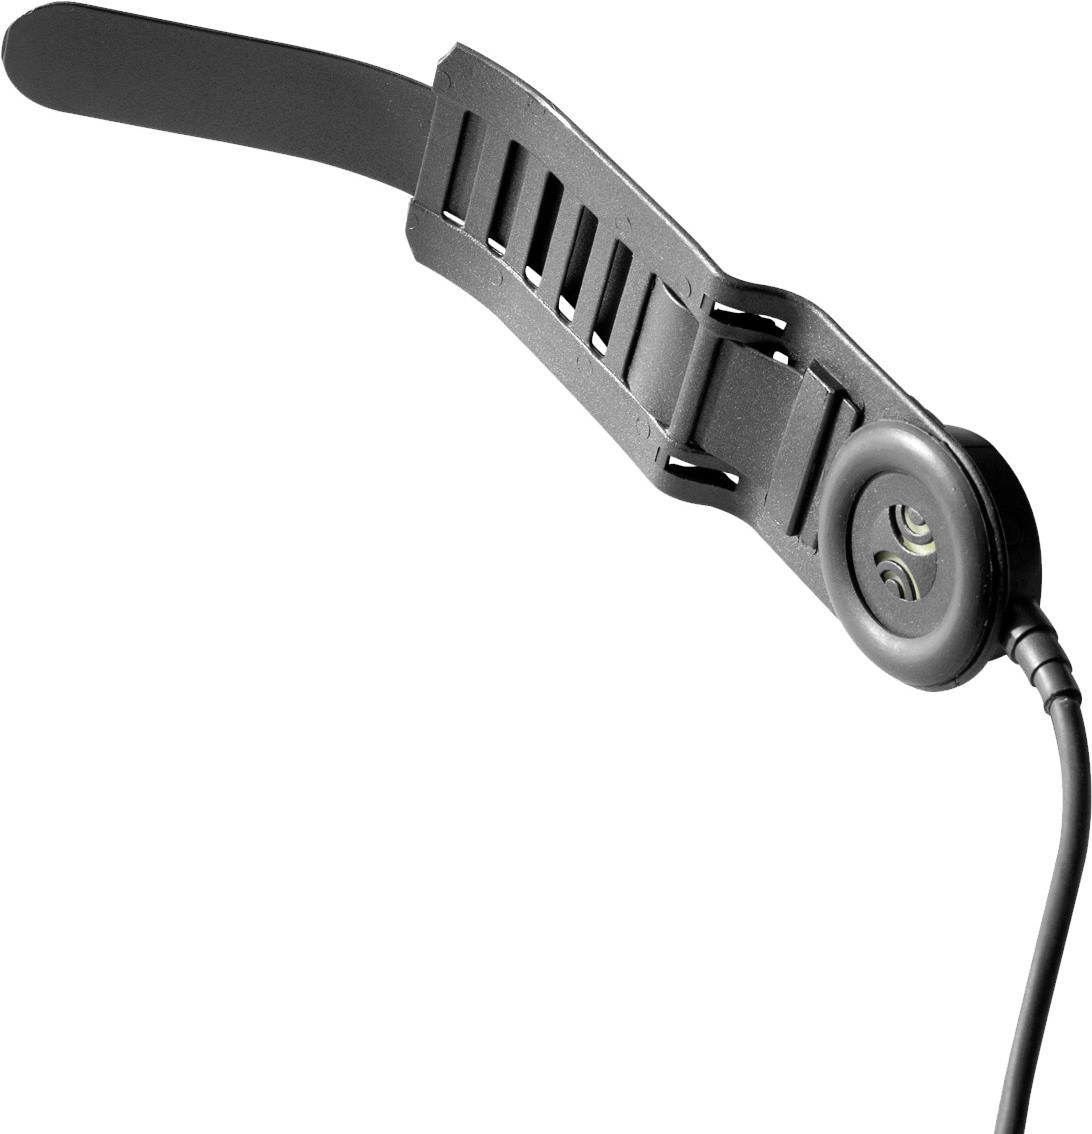 Savox HC-E Helmgarnitur, IP56, Spiralkabel, sprachempf.Elektretmikro am Hörer, Nexus 1 Hörer (verbessert) mit integriertem sprachempfindlichenElektretmikrofon (geräuschfilternd), mit Nexus Schnell-trennstecker zum Anschluss einer PTT-Einheit mit Funk